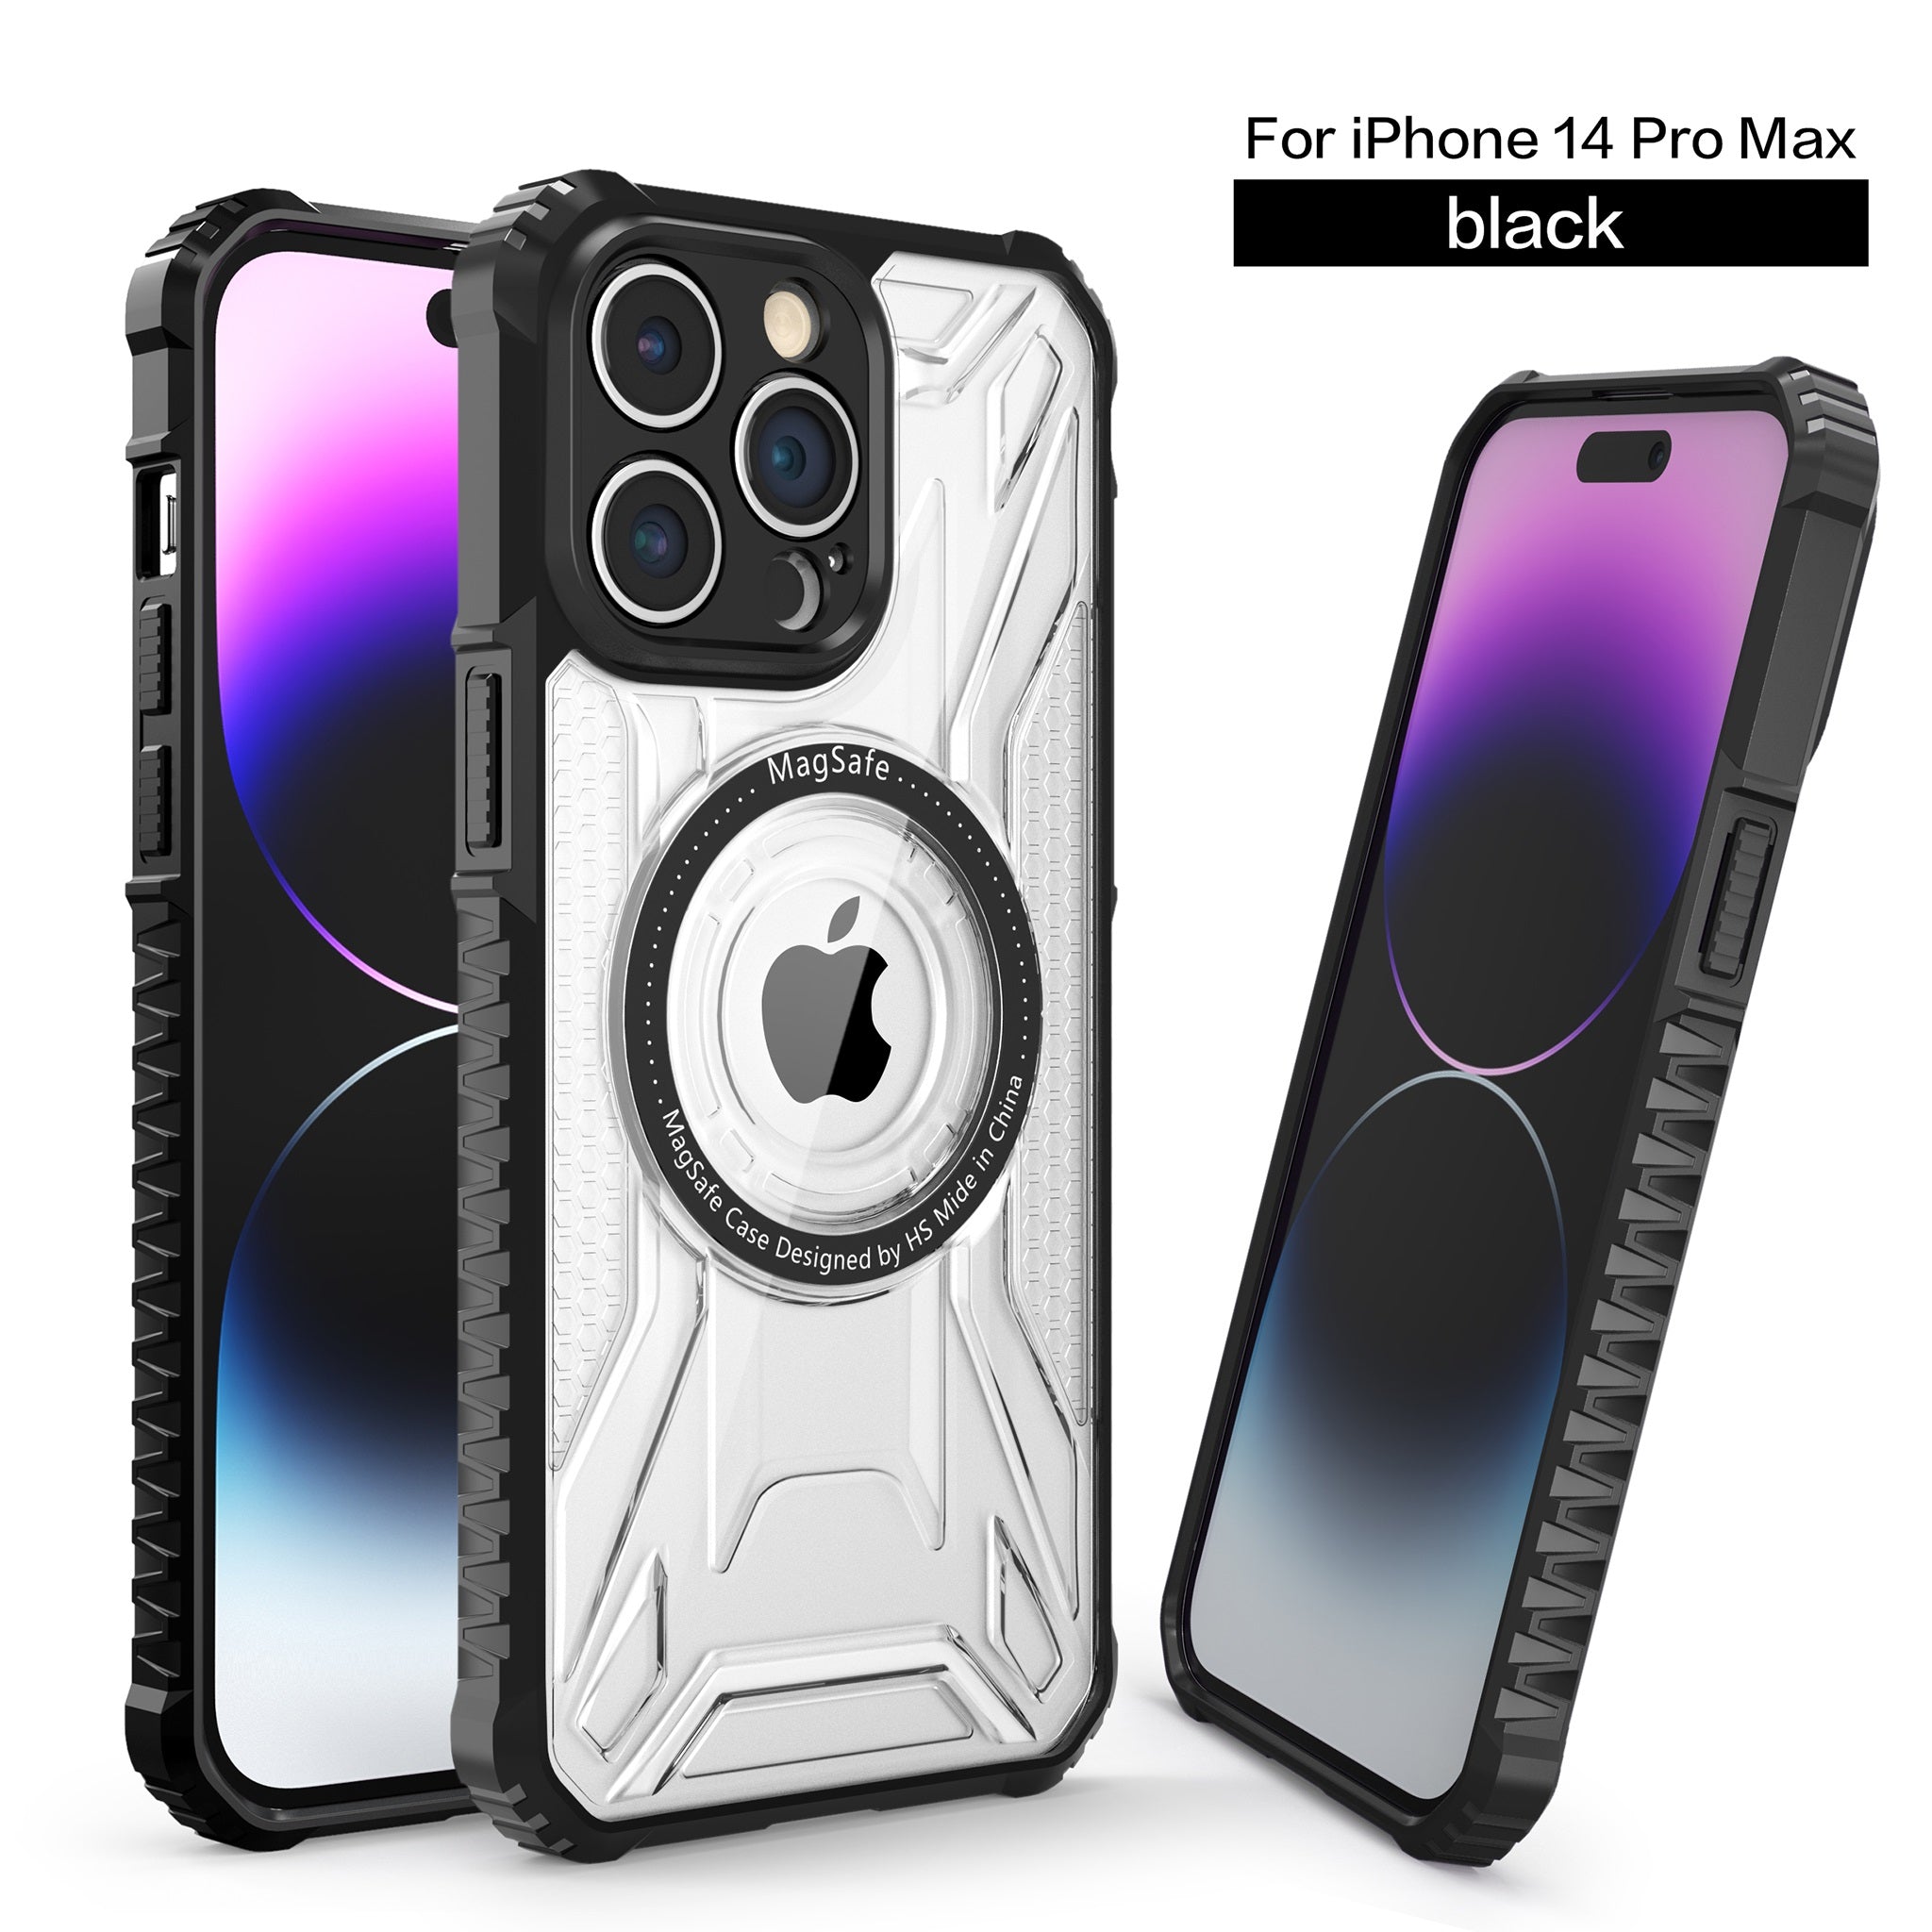 MC9 Design Case for iPhone 14 Pro Max